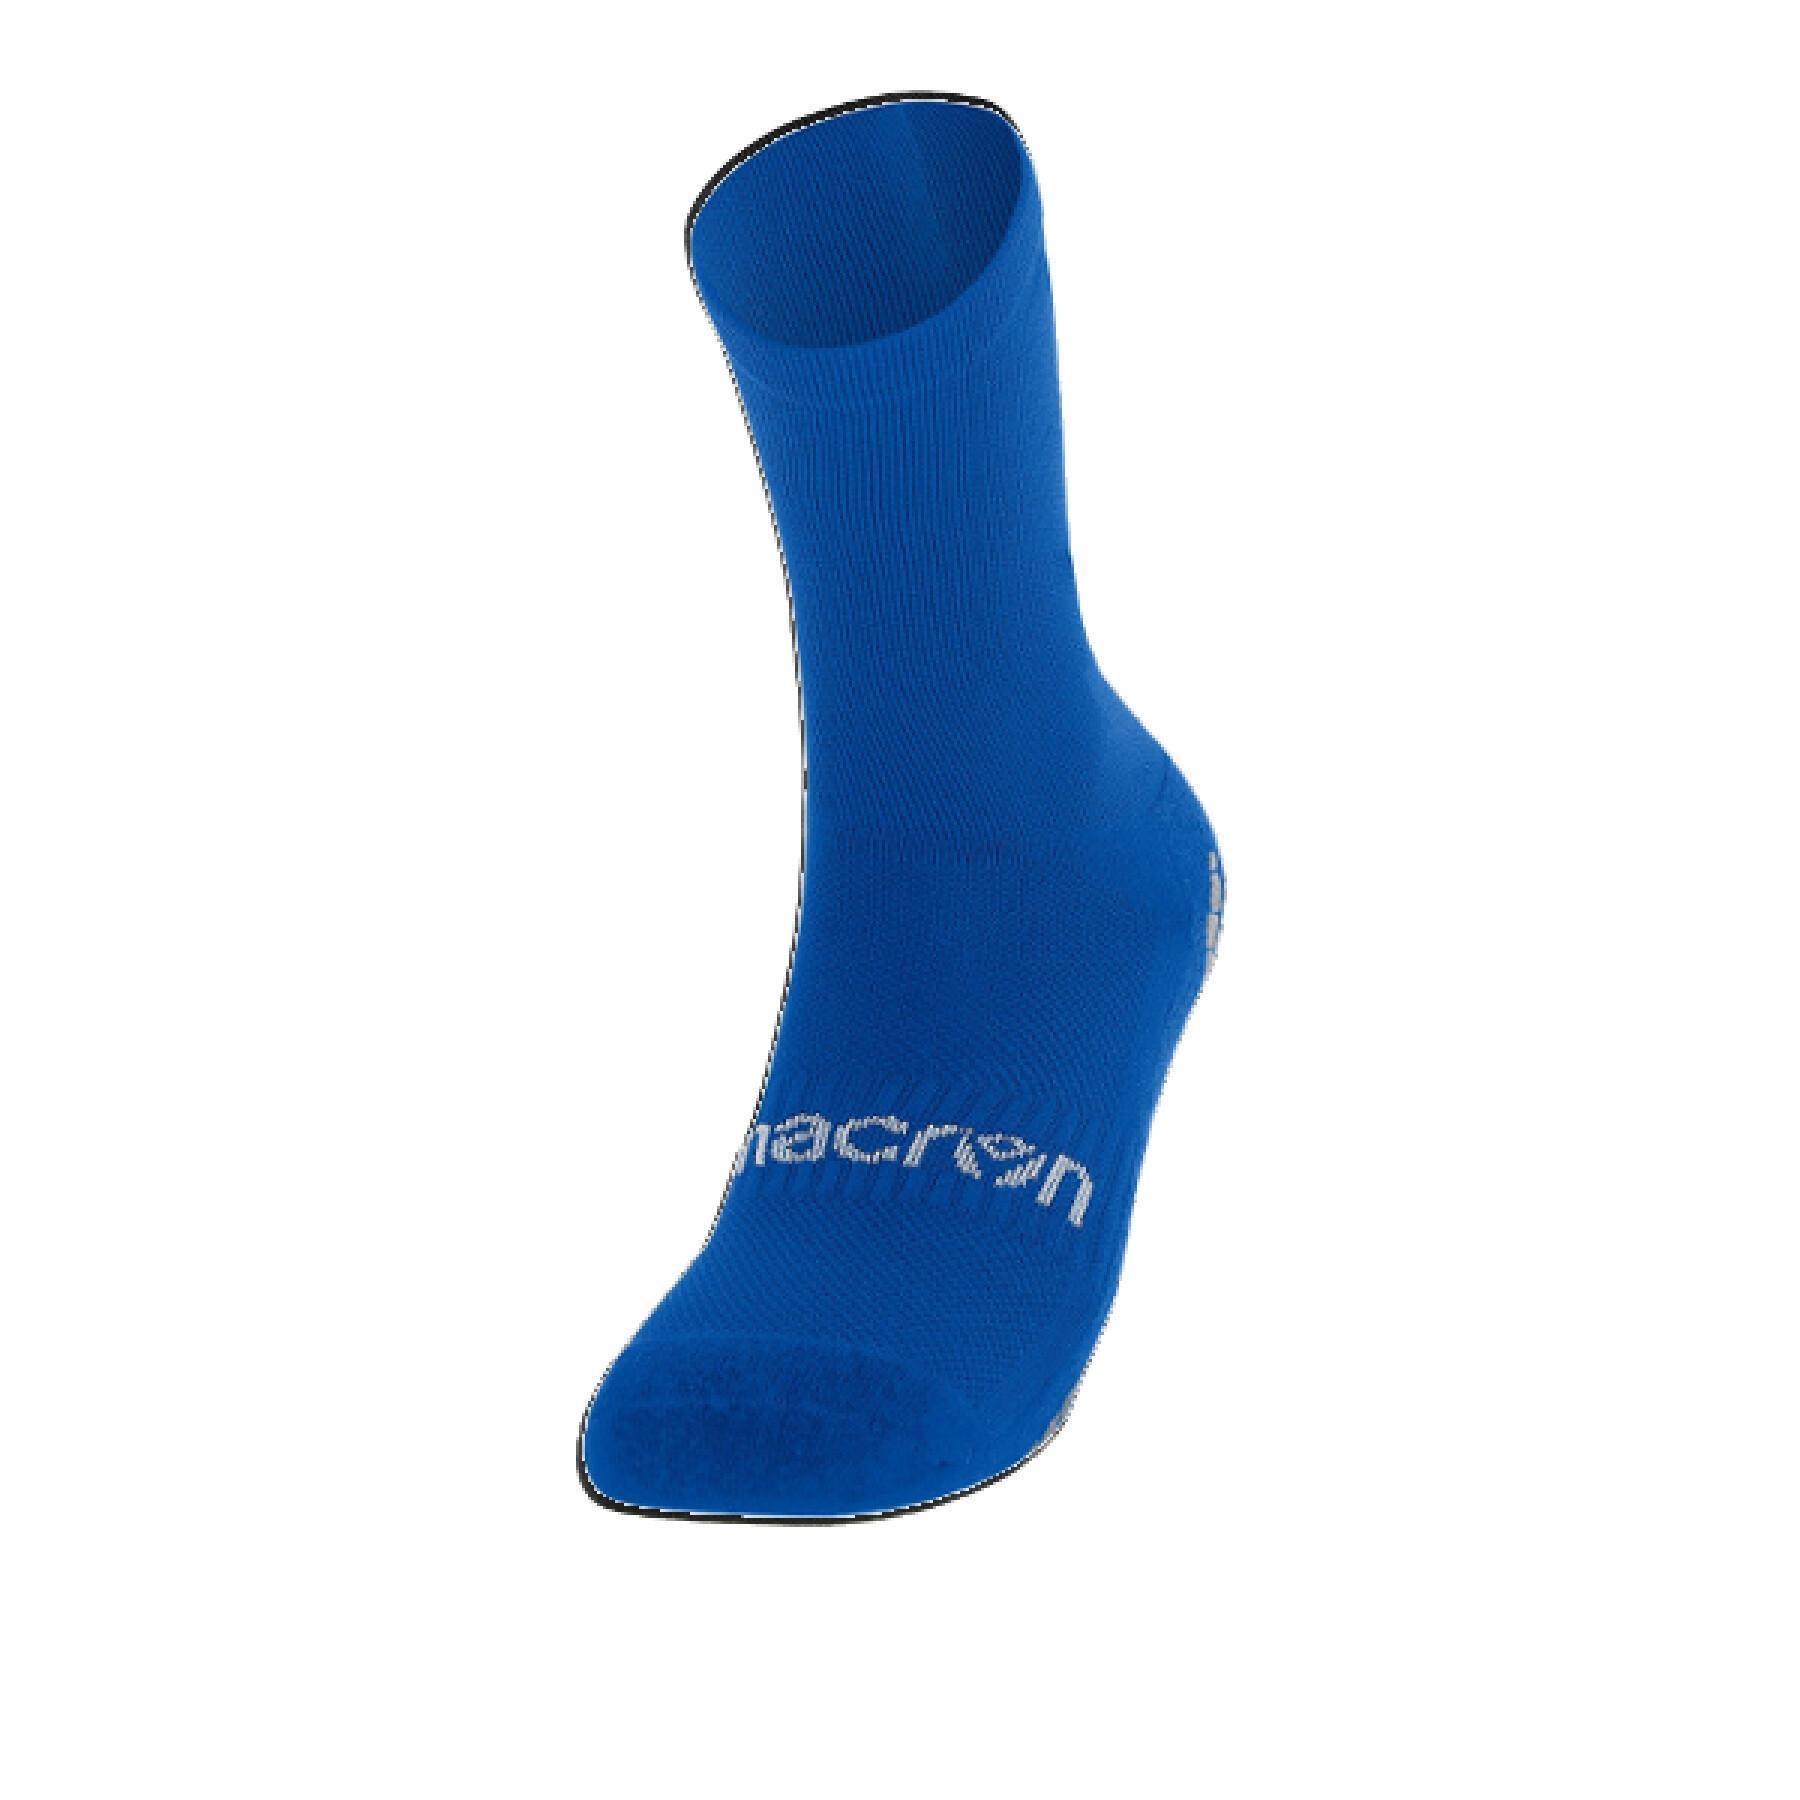 Socks Macron Pro Grip Hero x5 - Socks - Men's wear - Rallystory wear